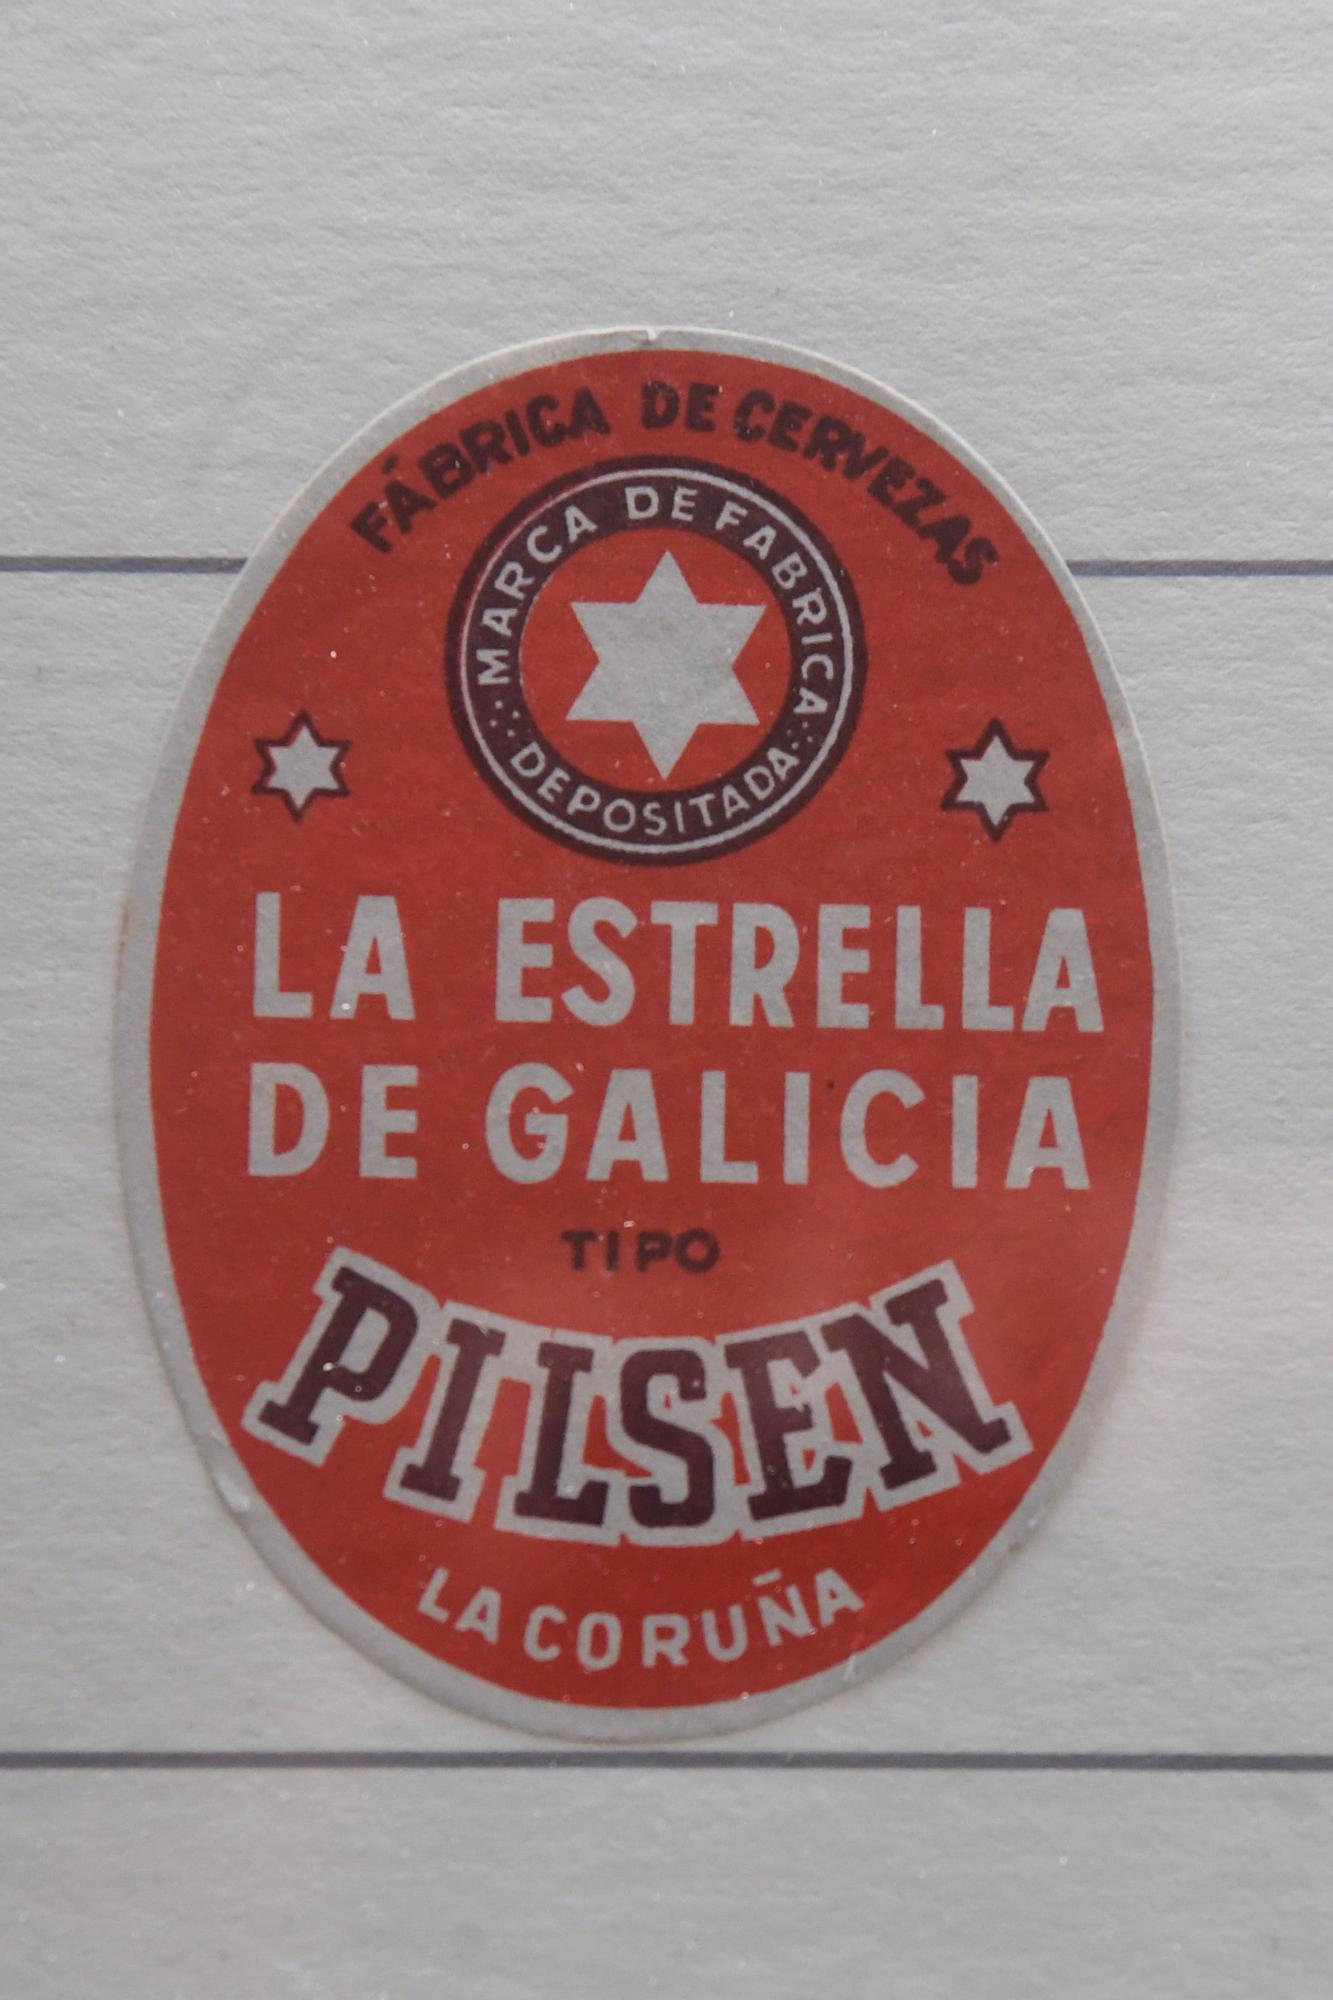 La primera lata de cerveza del mundo, en el Museo Estrella Galicia